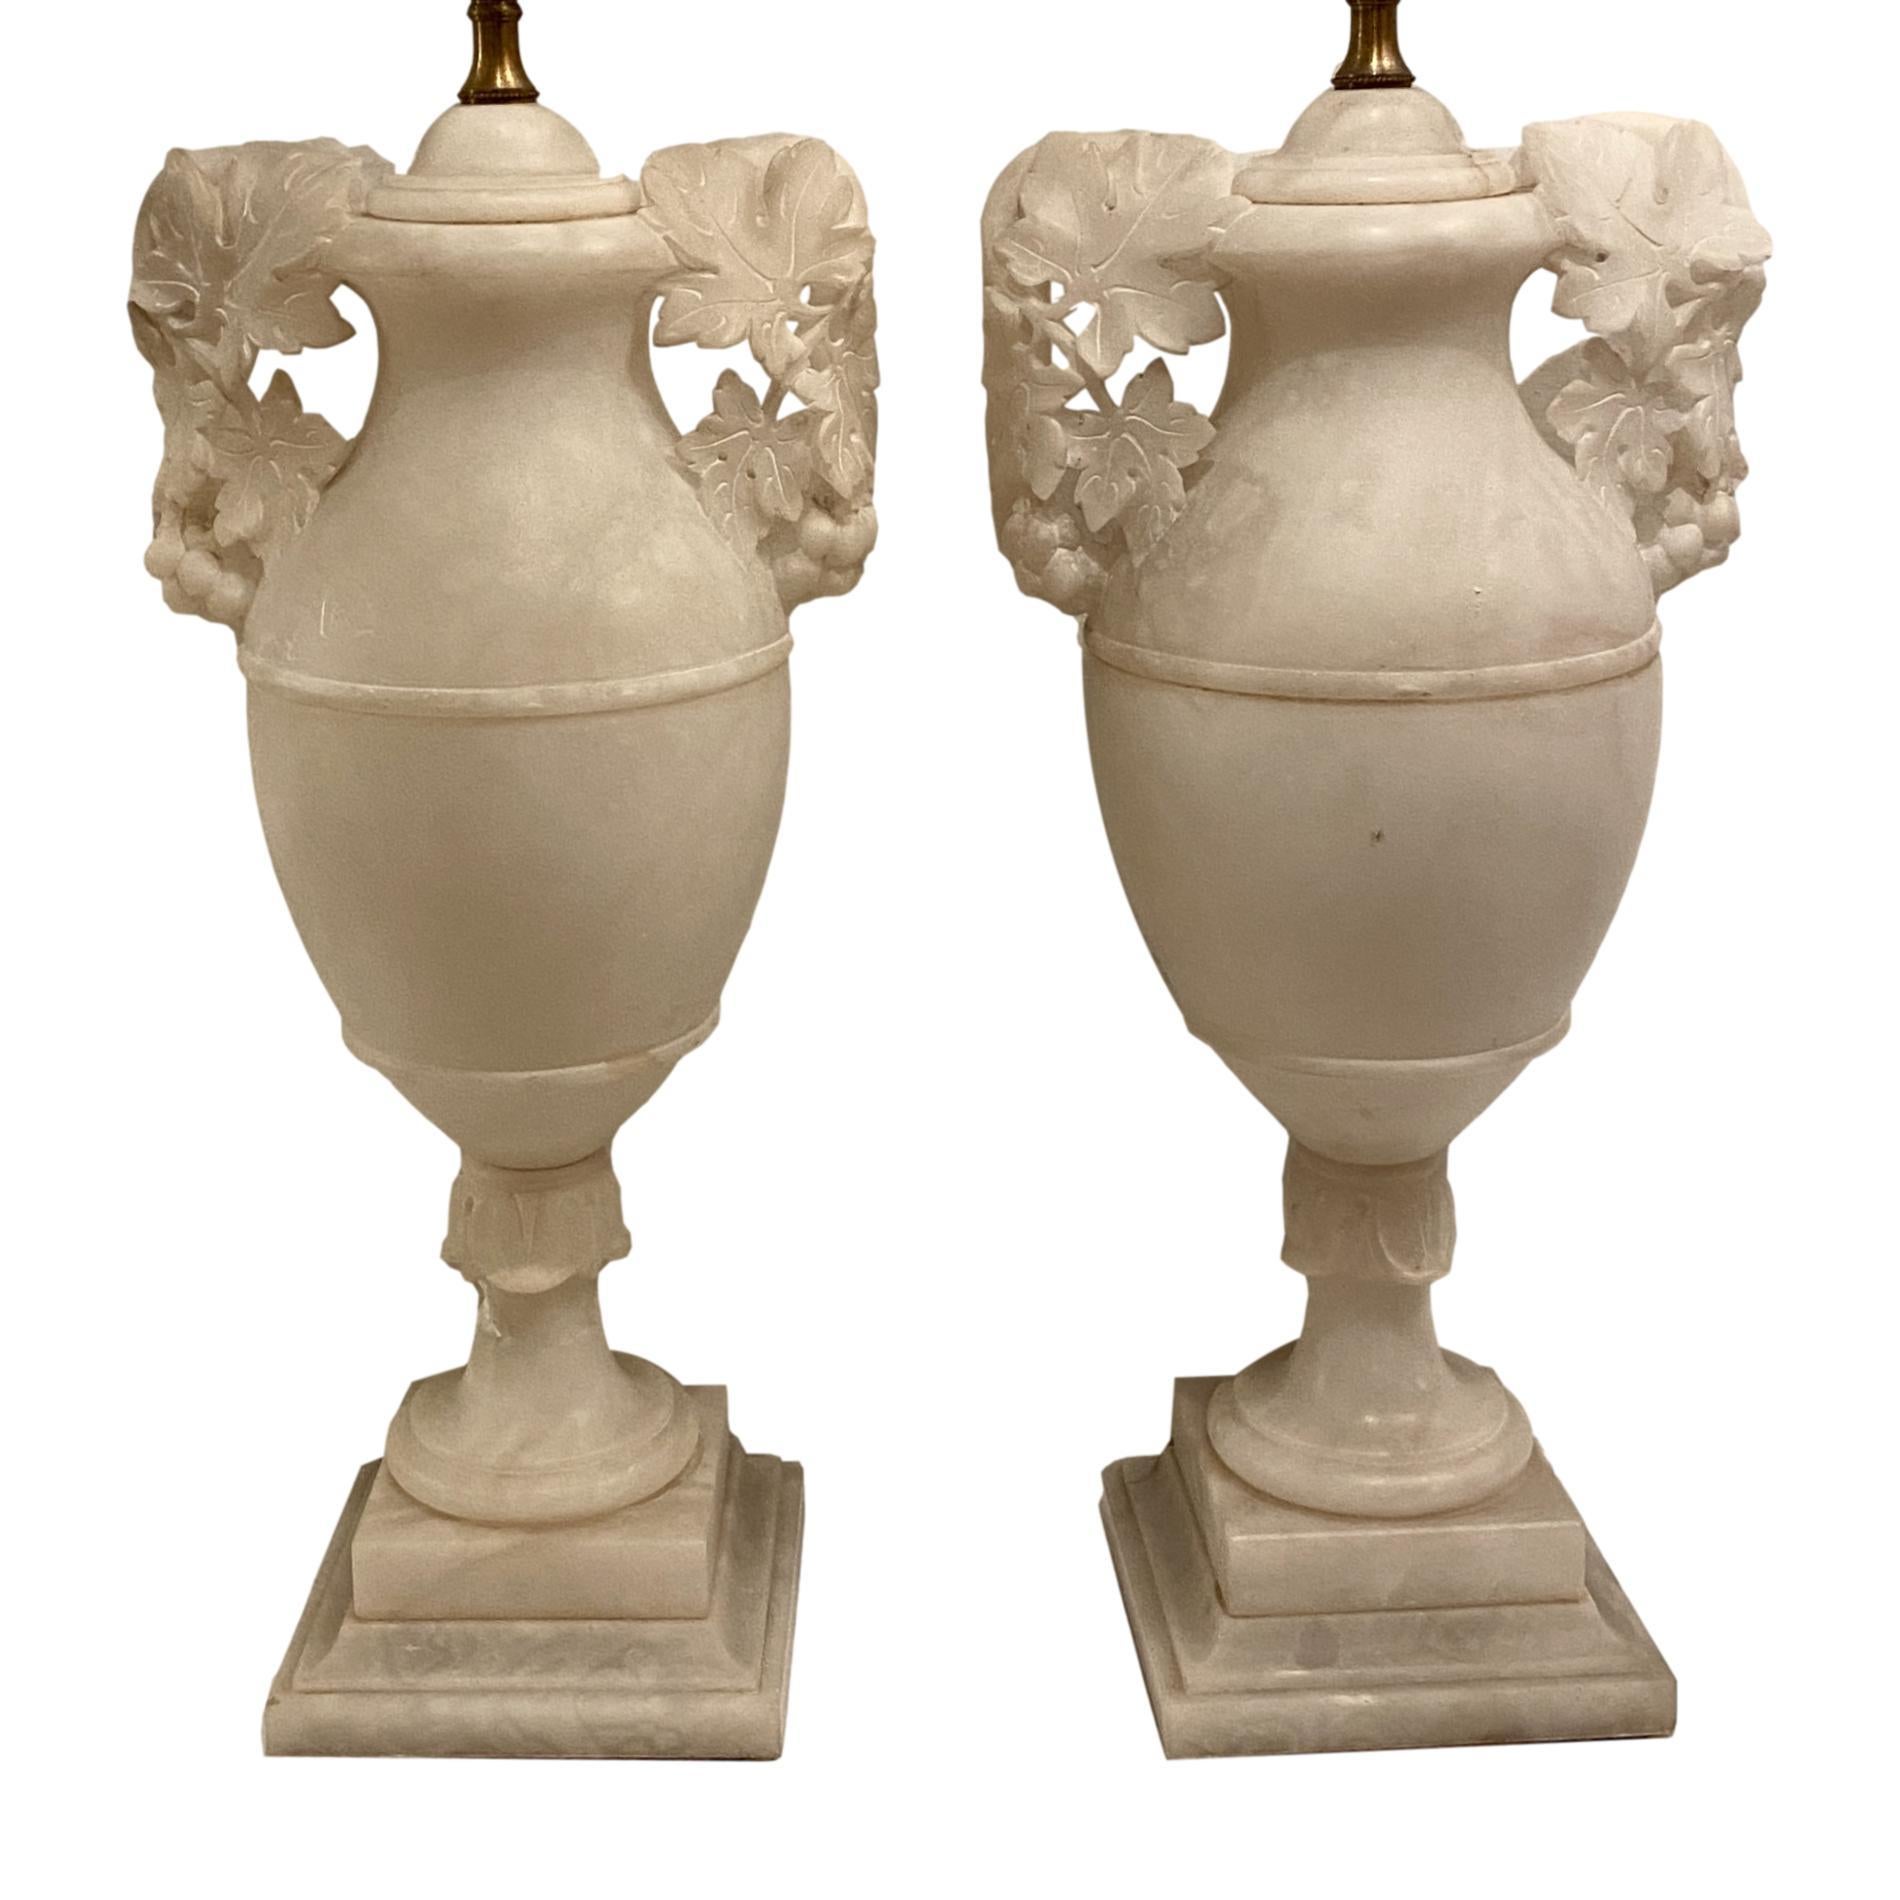 Zwei französische Tischlampen aus geschnitztem Alabaster mit durchbrochenen Griffen mit Blattwerkmotiv, CIRCA 1920er Jahre.

Abmessungen:
Höhe des Körpers: 18